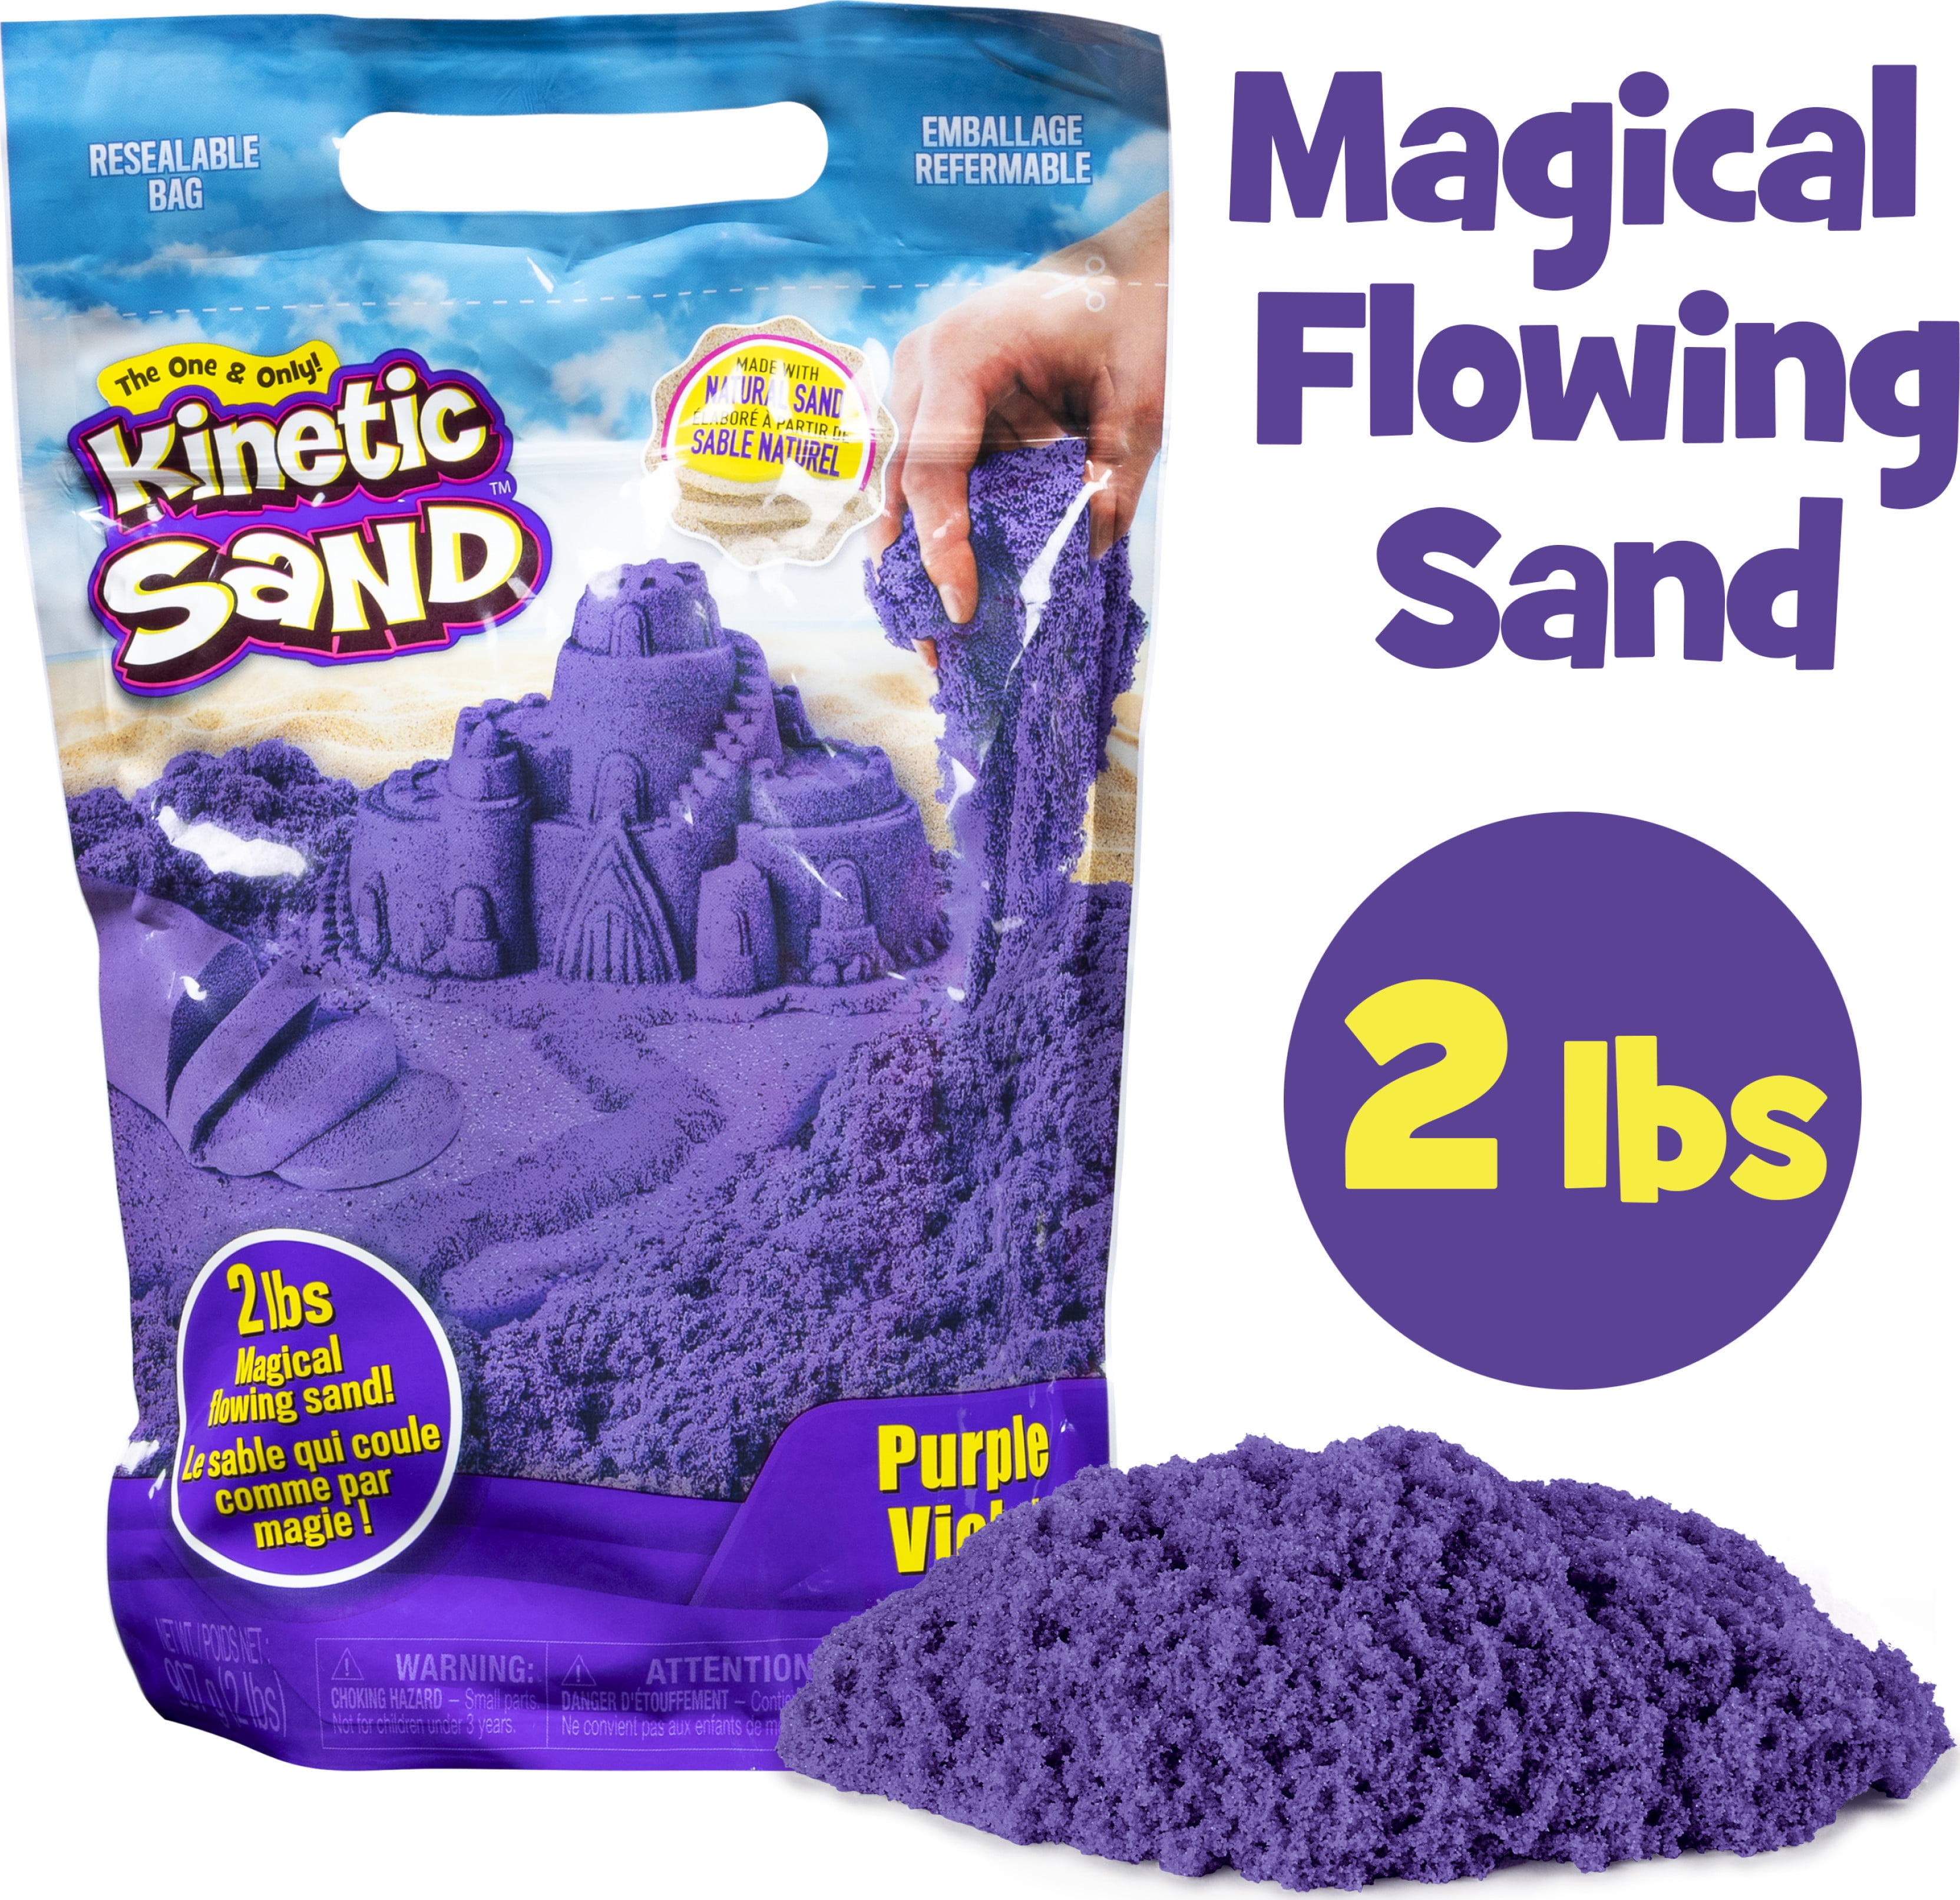 The Original Moldable Sensory Play Sand, Brown, 3 Lb